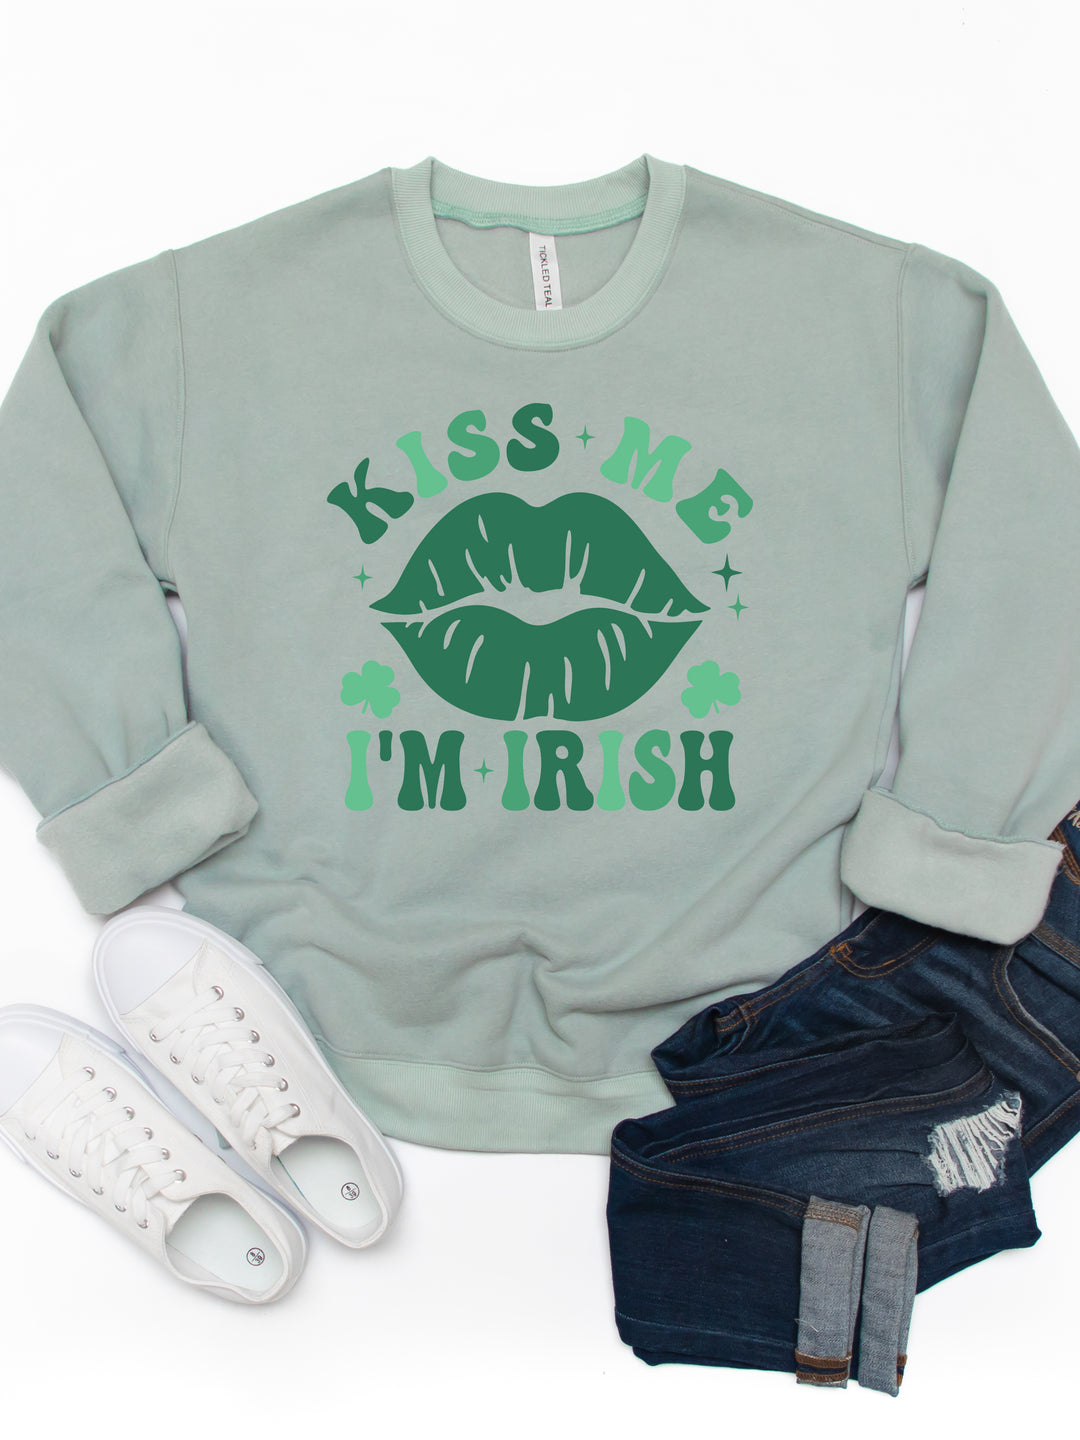 Kiss Me Im Irish  - Graphic Sweatshirt